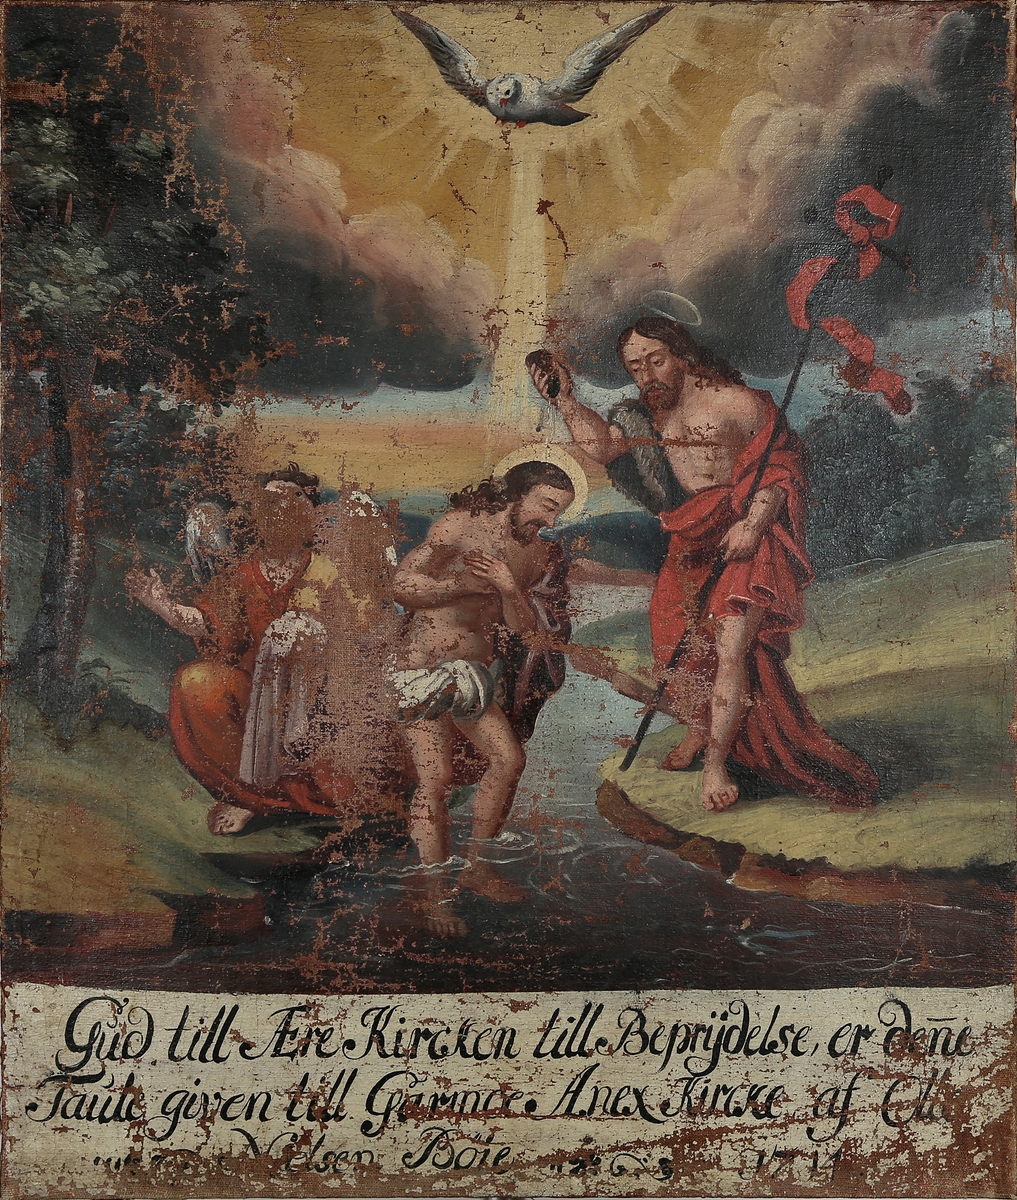 Jesu dåp med Johannes døperen til høyre, og en engel på vestre side. En due i overkant. Tekstfelt under motivet.